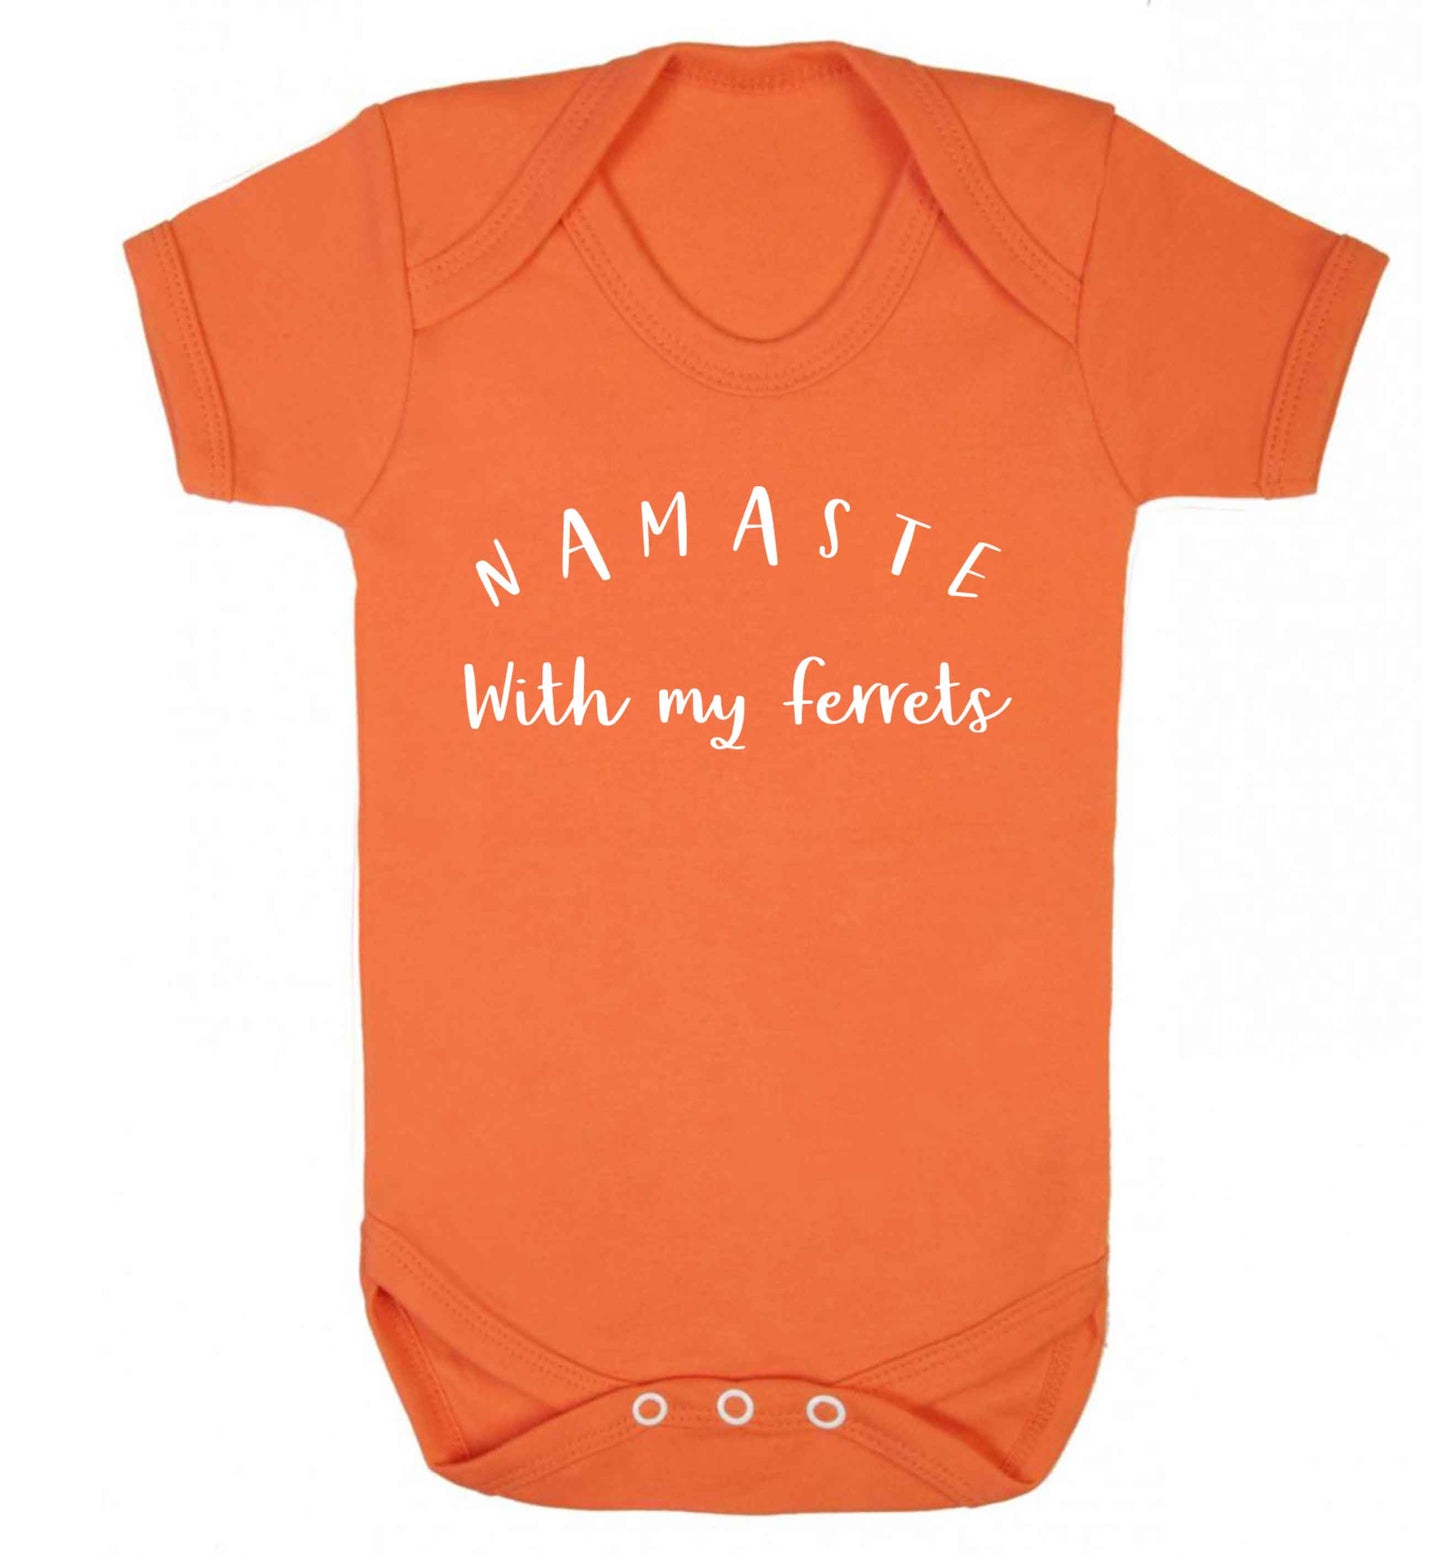 Namaste with my ferrets Baby Vest orange 18-24 months